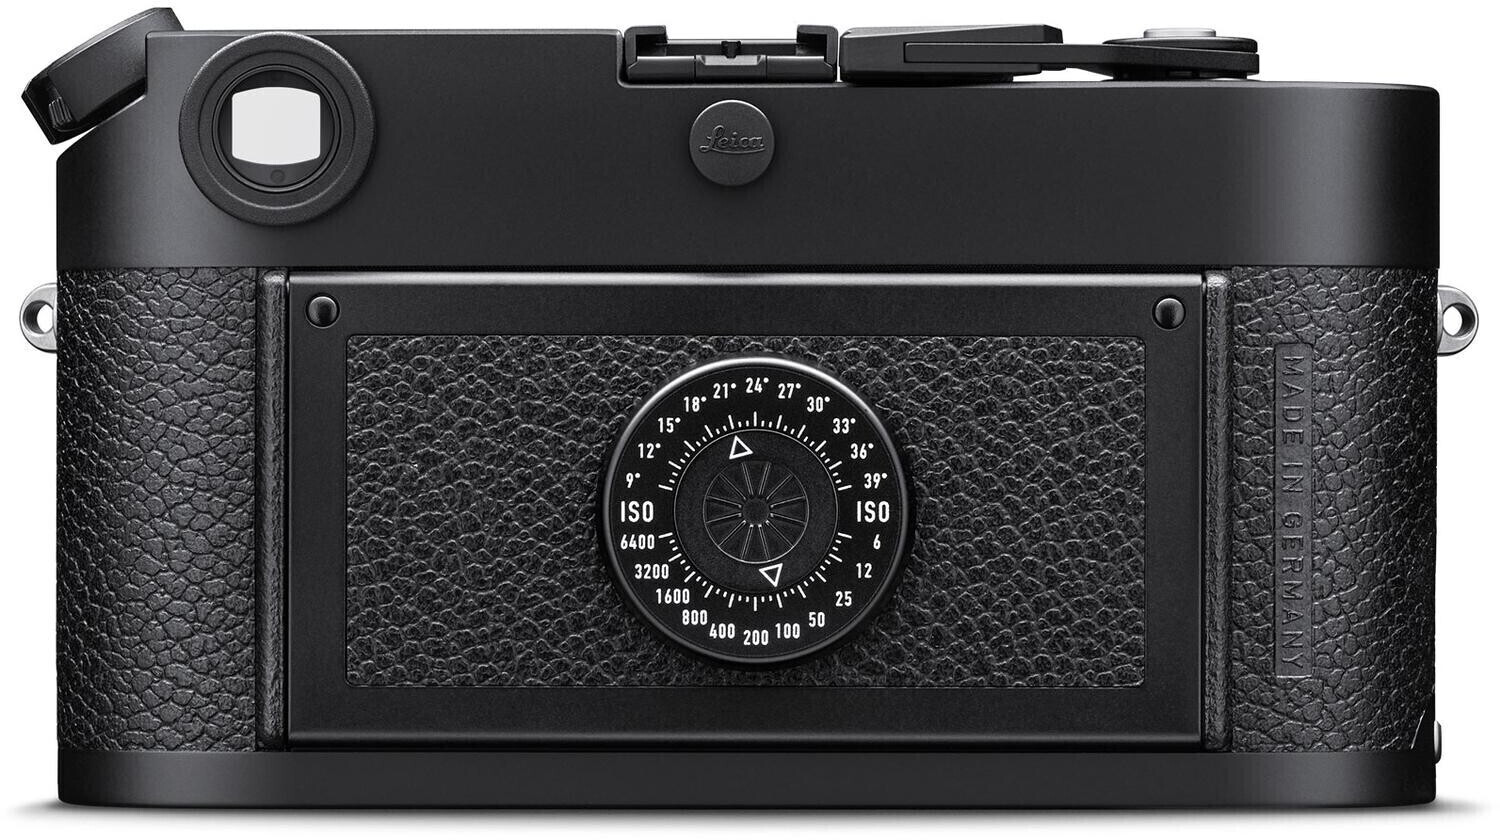 Appareil Argentique Leica Argent à viseur télémétrique - Appareil